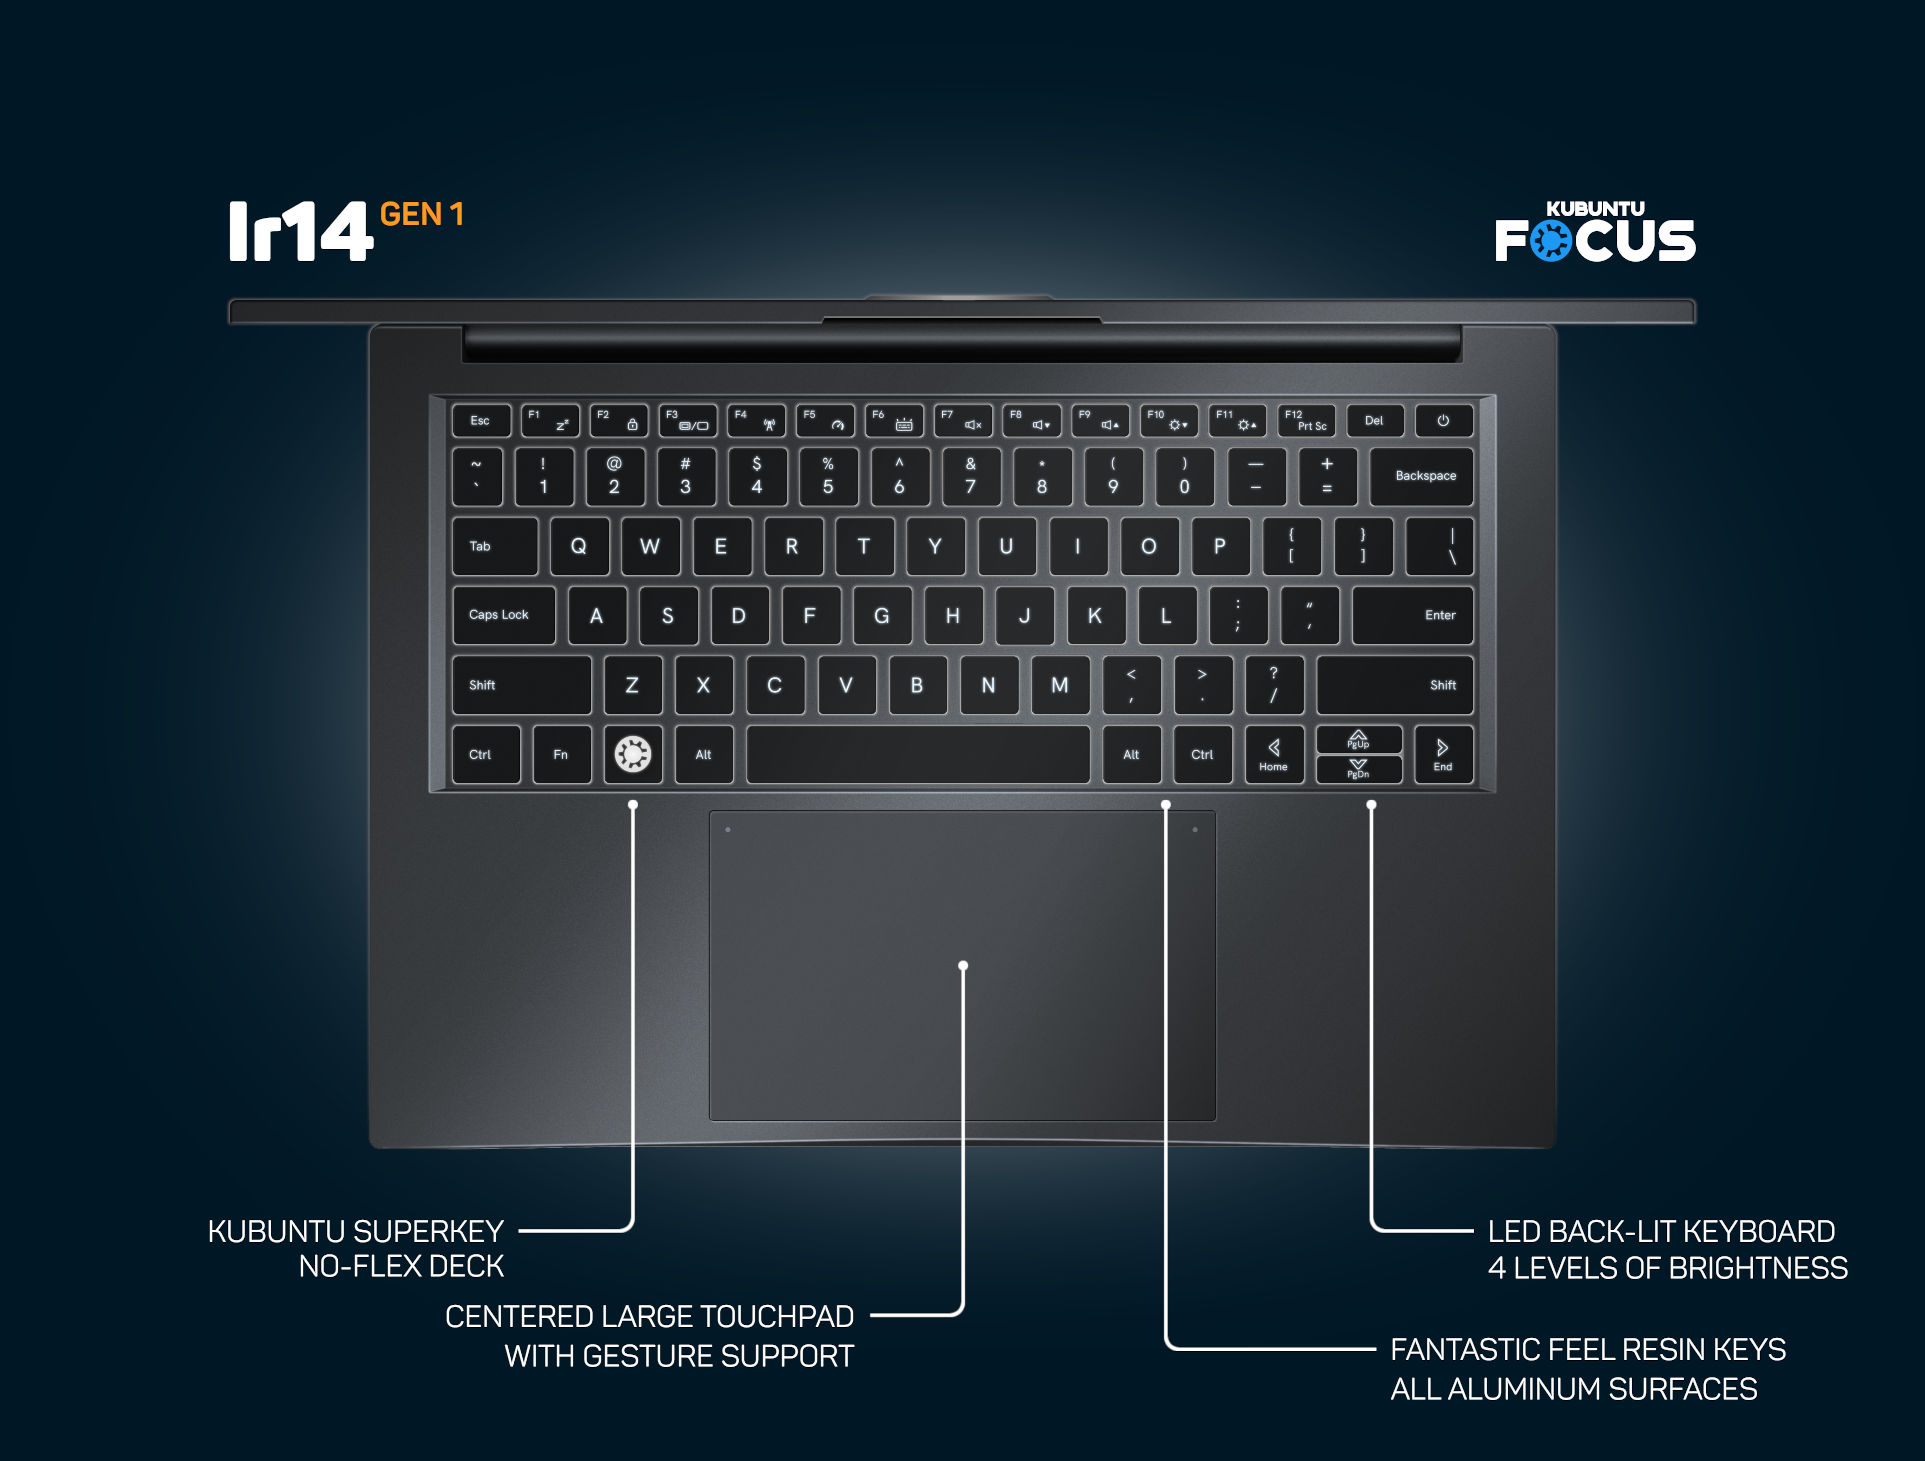 Kubuntu Focus Ir14 Keyboard & Touchpad